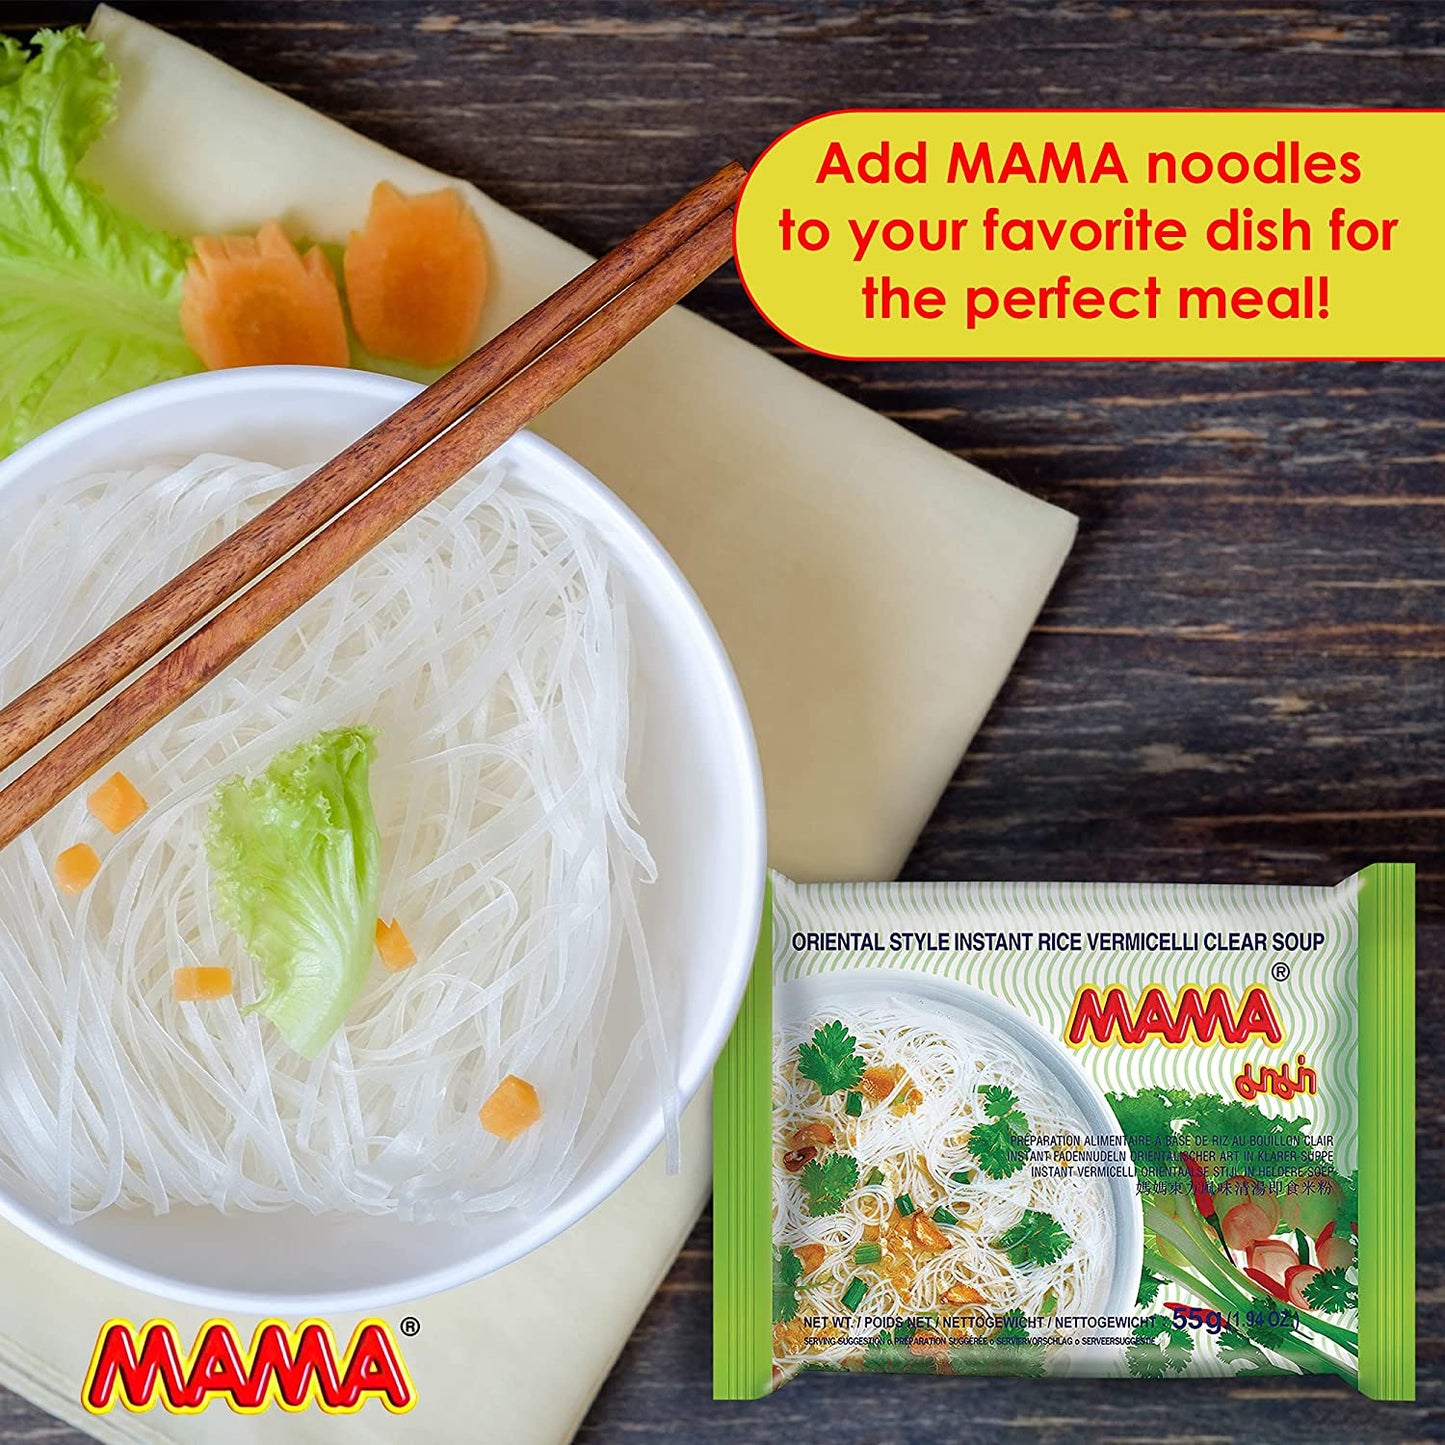 媽媽牌 - 即食清湯米粉 MAMA Oriental Style Instant Rice Vermicelli Clear Soup 55 g